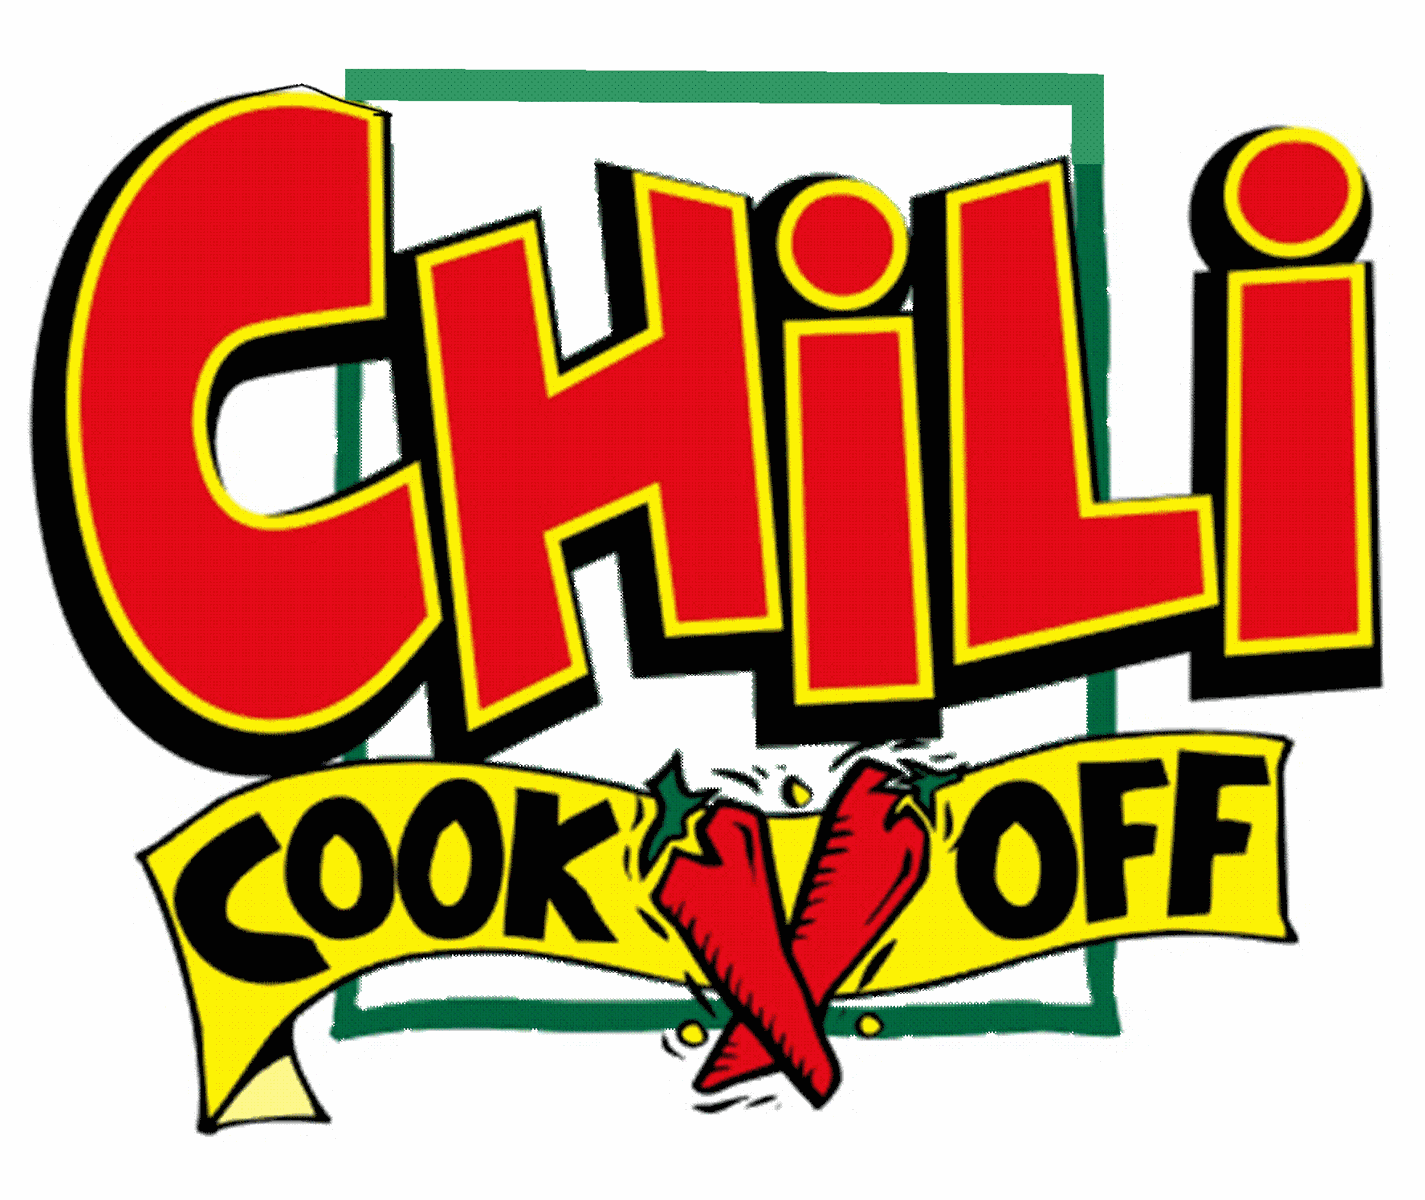 chili cook off border